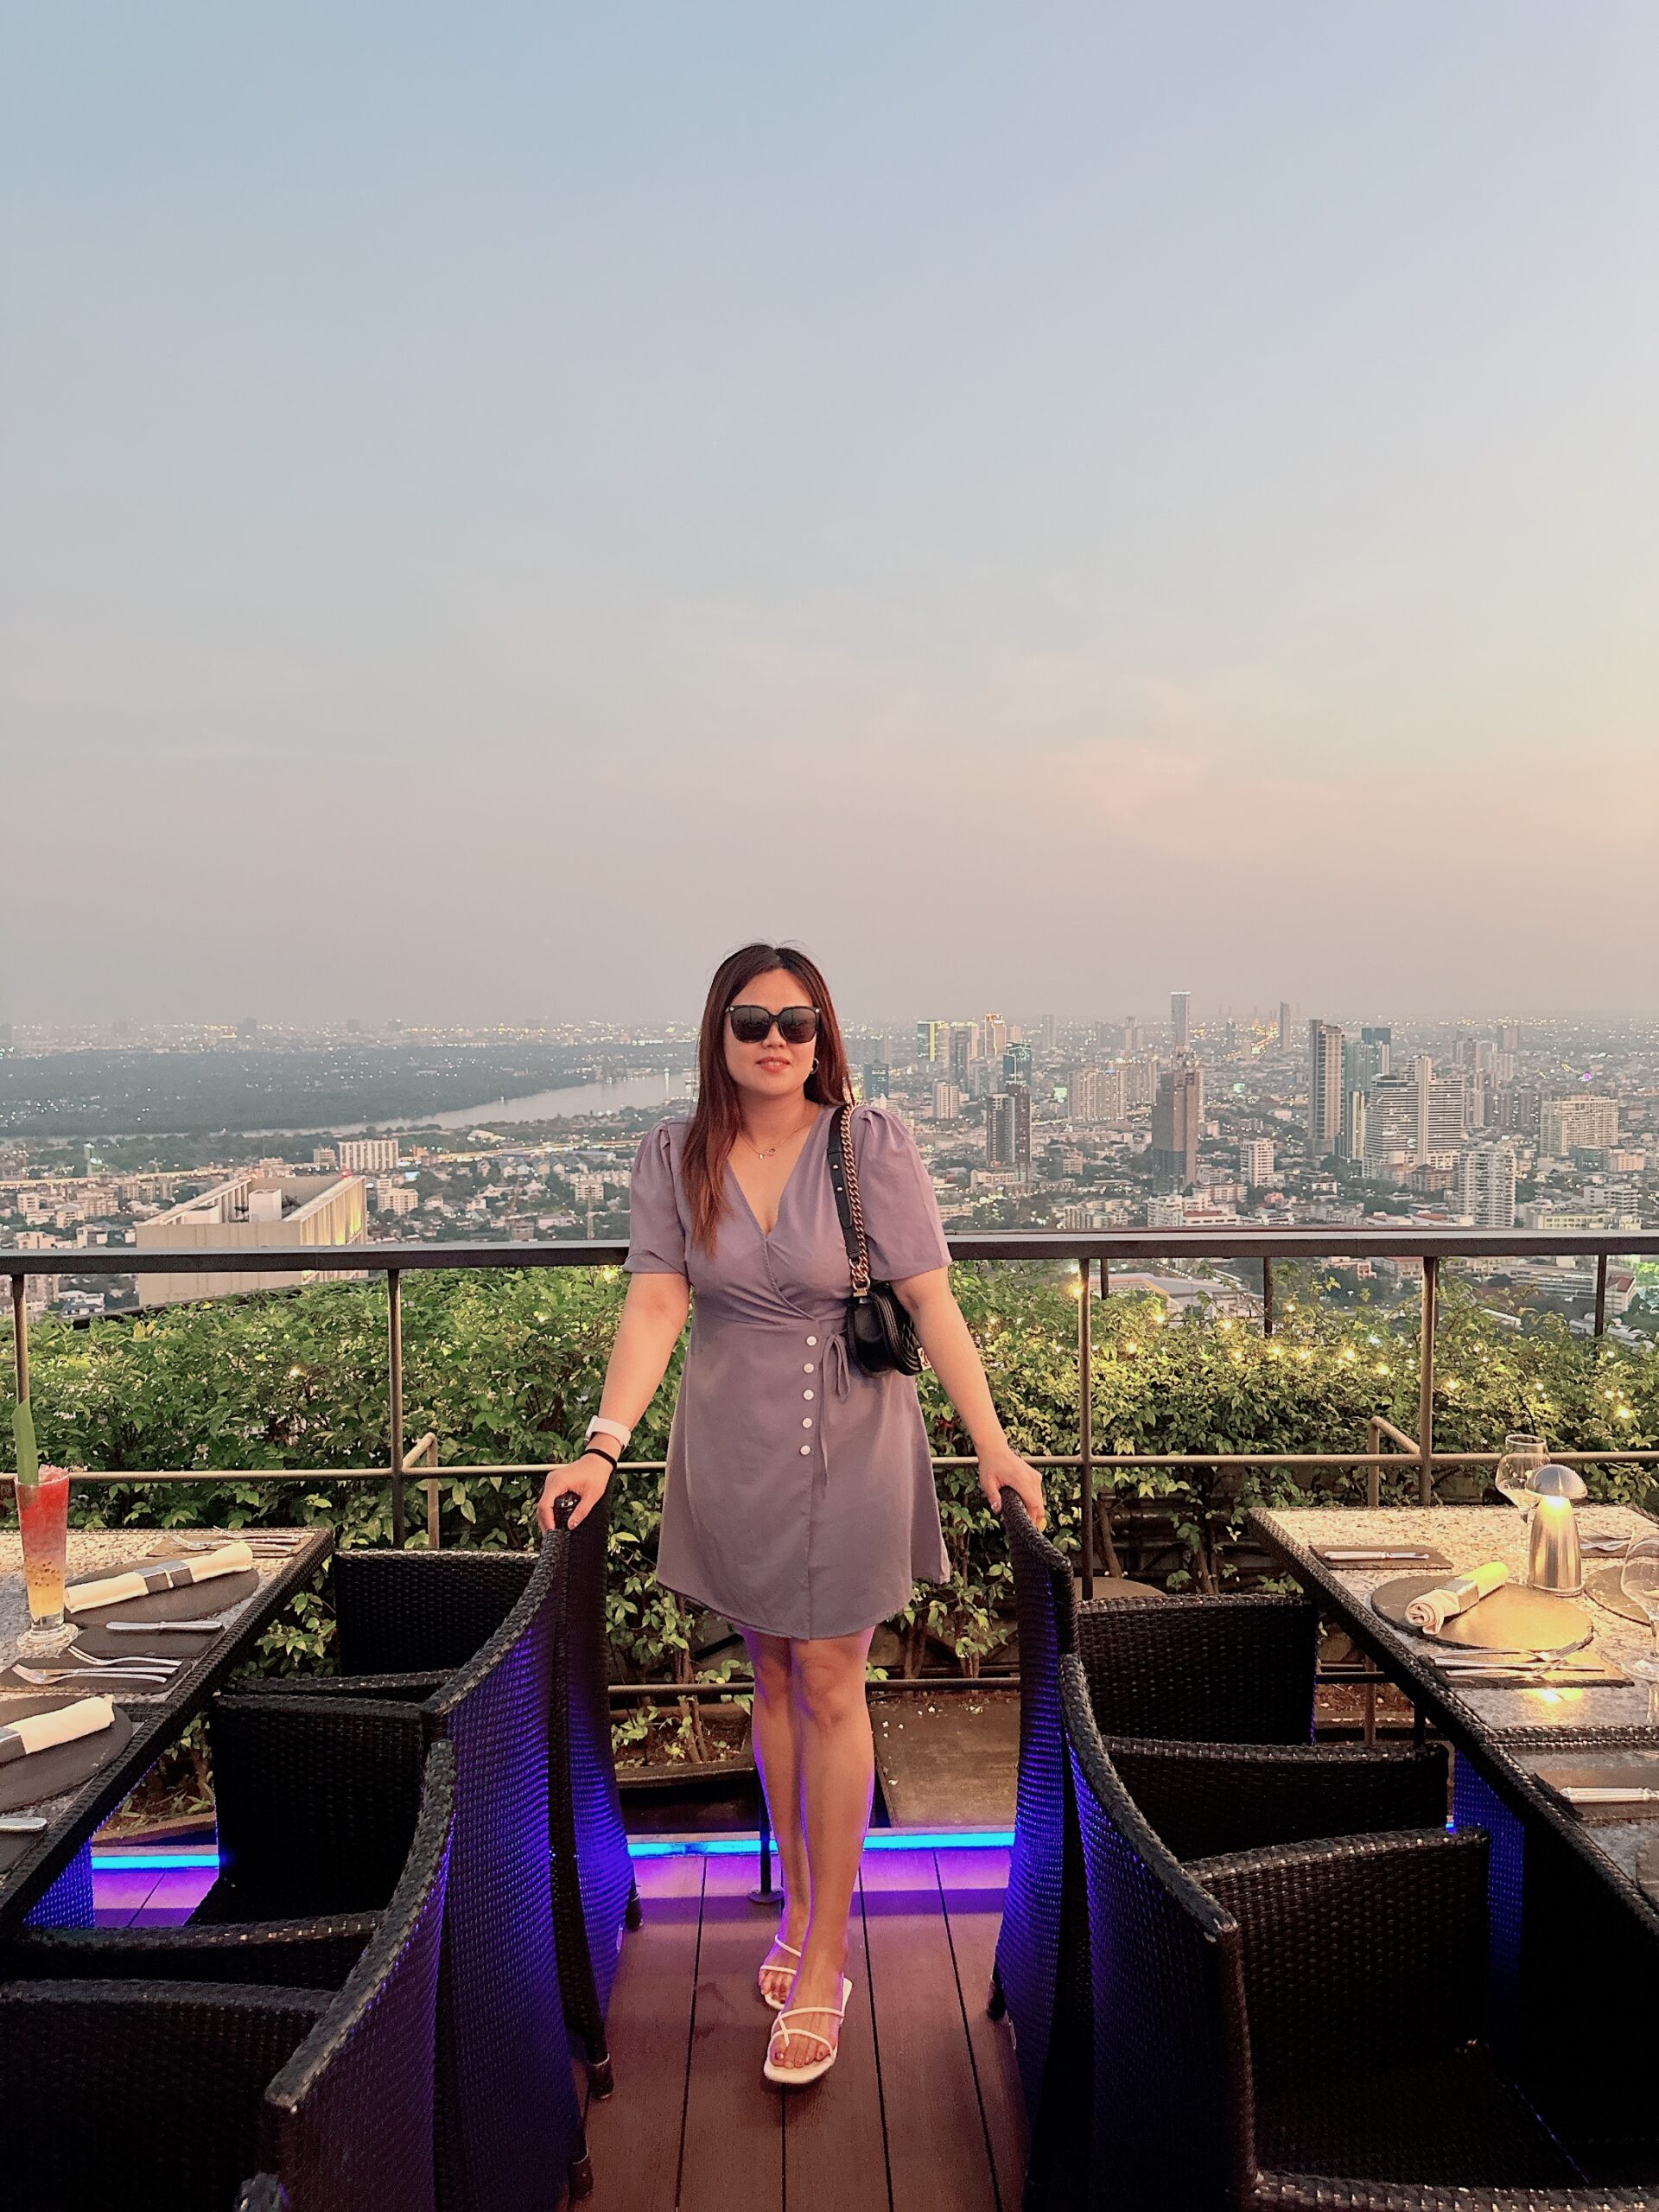 【2023曼谷高空餐廳酒吧】曼谷悅榕庄 Banyan Tree Vertigo高級晚餐｜泰國高空酒吧 @GINA環球旅行生活